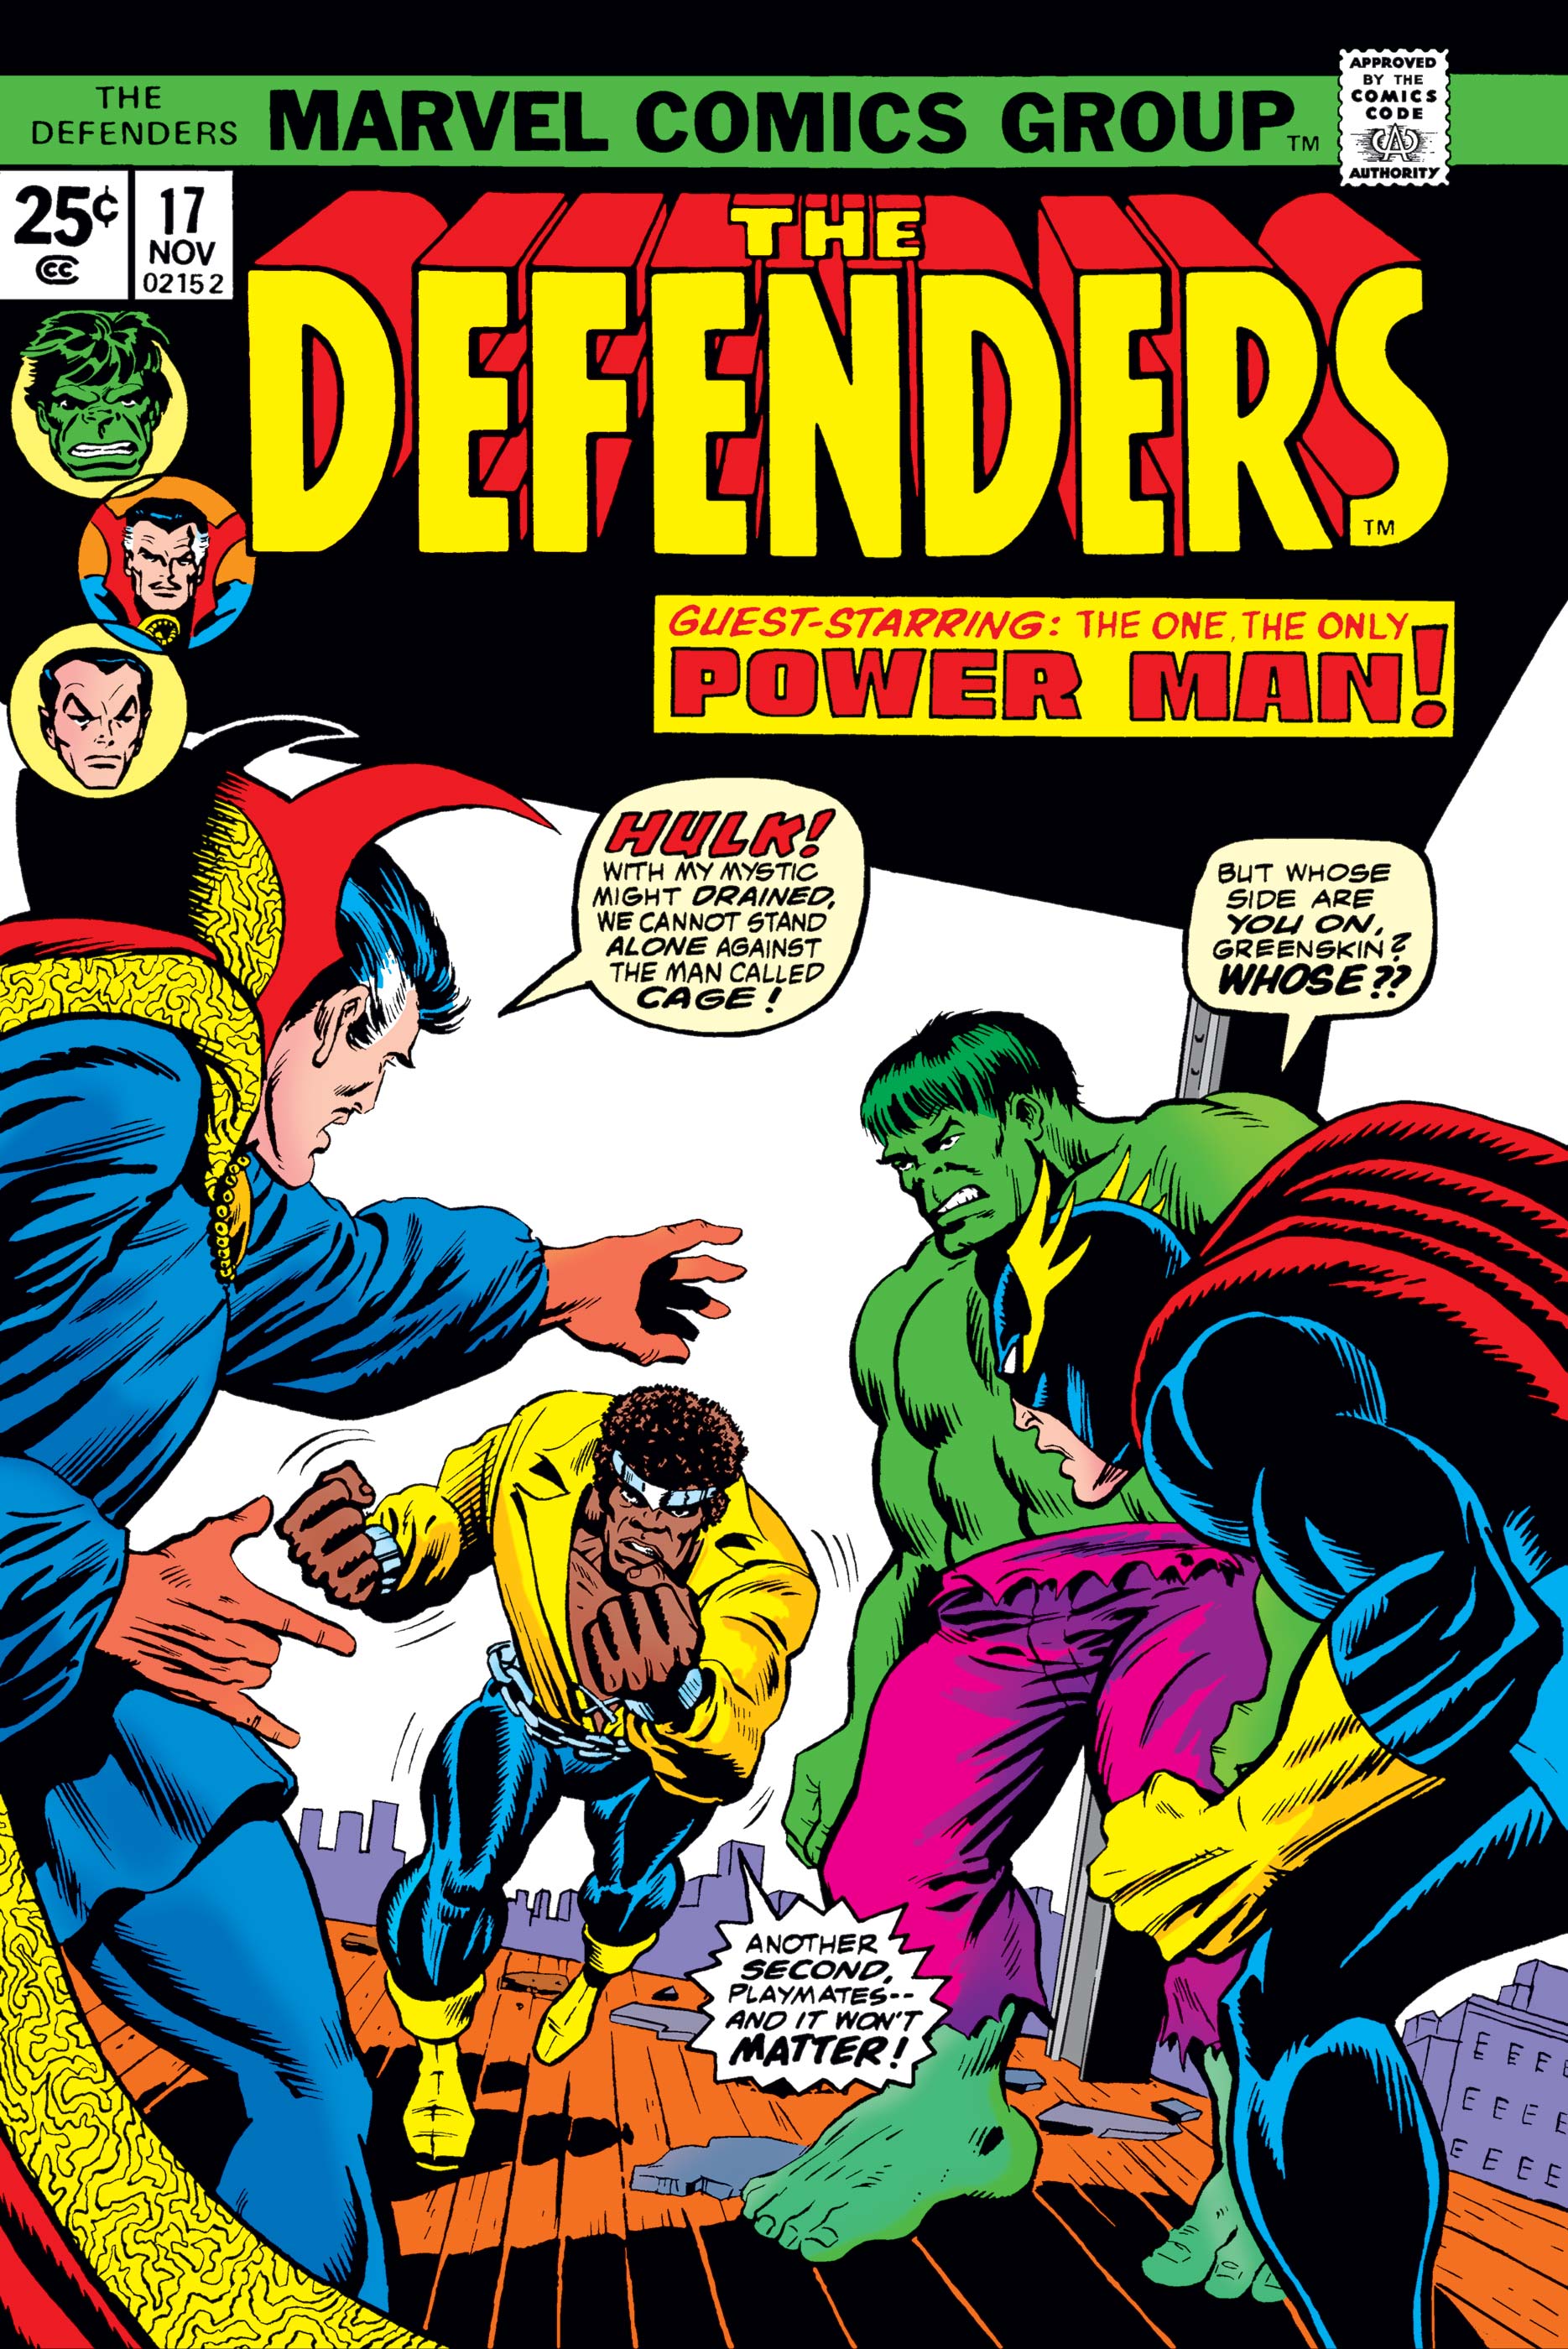 Defenders (1972) #17